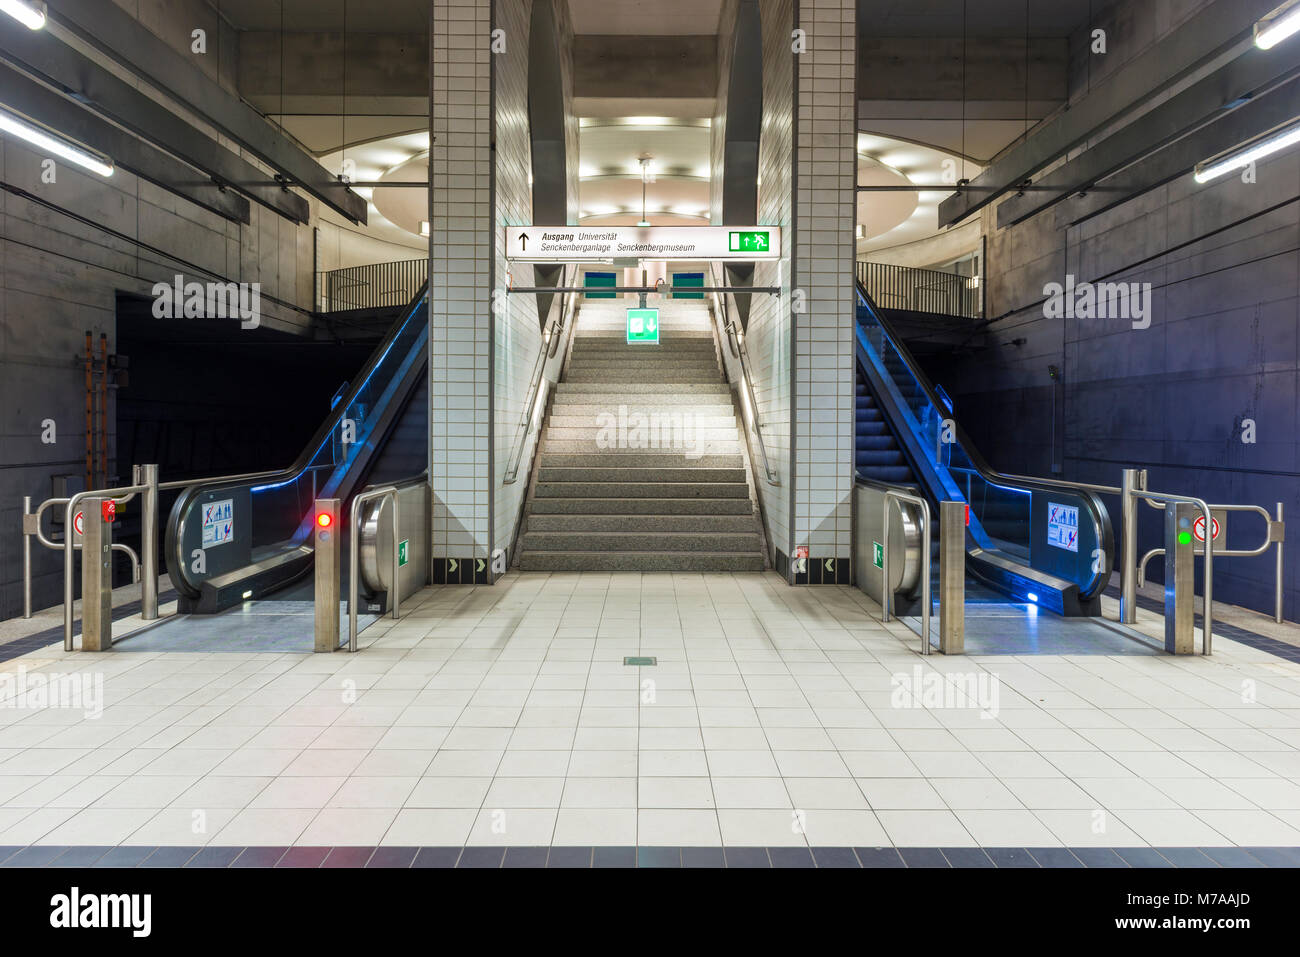 Escalier et escaliers mécaniques, la station de métro Bockenheimer Warte, Bockenheim, Frankfurt am Main, Hesse, Allemagne Banque D'Images